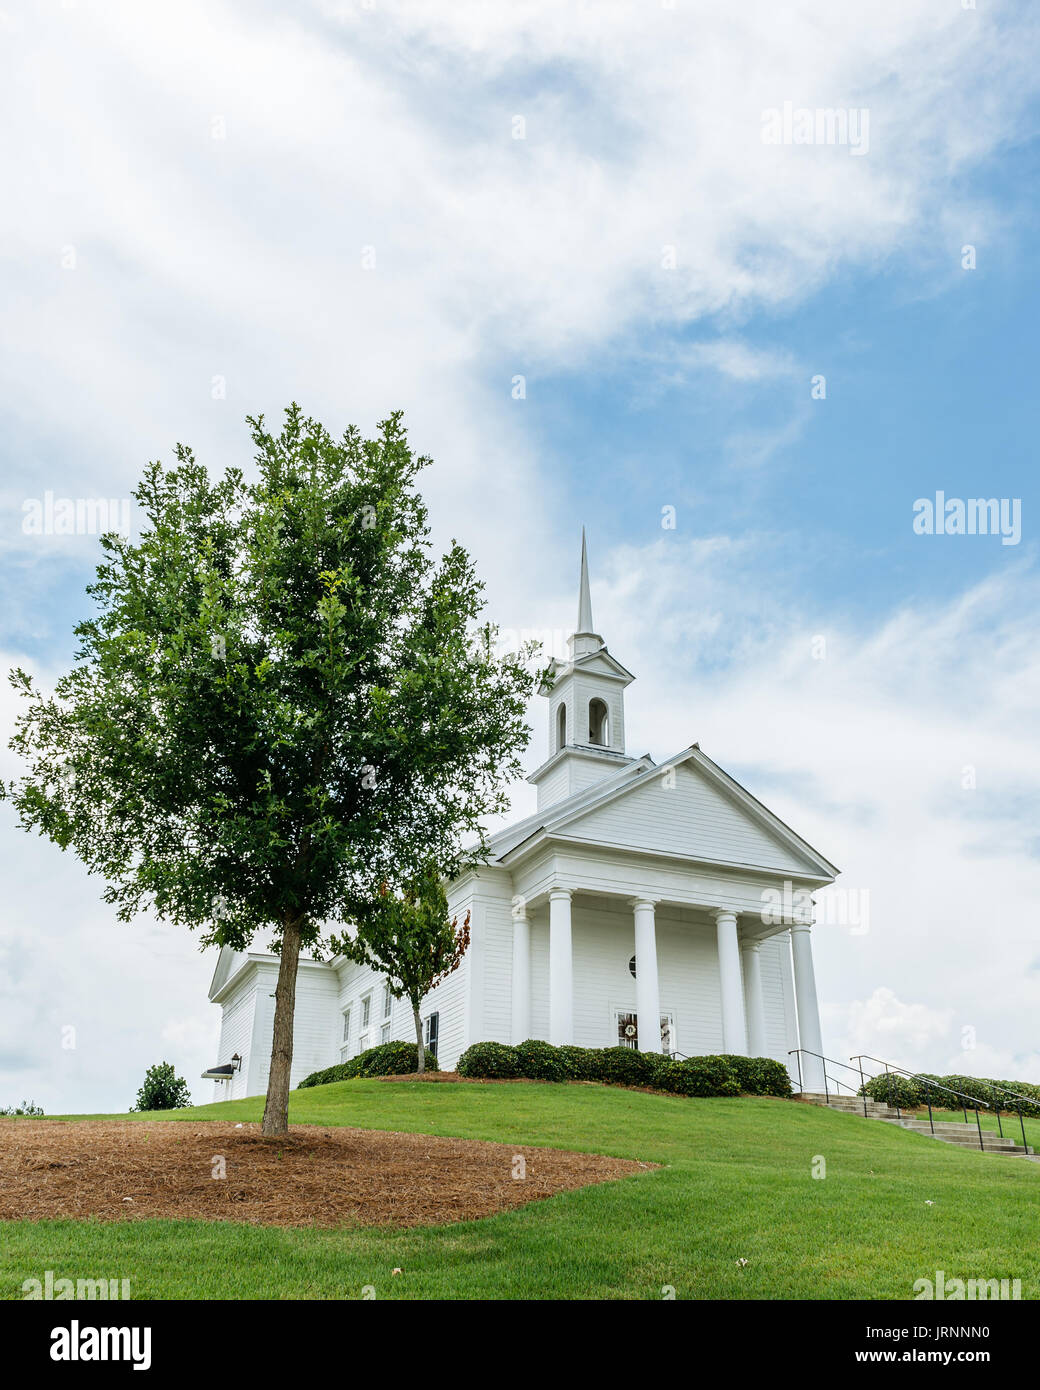 La Capilla en las aguas, cerca de Montgomery, Alabama, es un lugar popular para bodas y eventos. Asentado en lo alto de una colina con vistas a la pequeña comunidad. Foto de stock